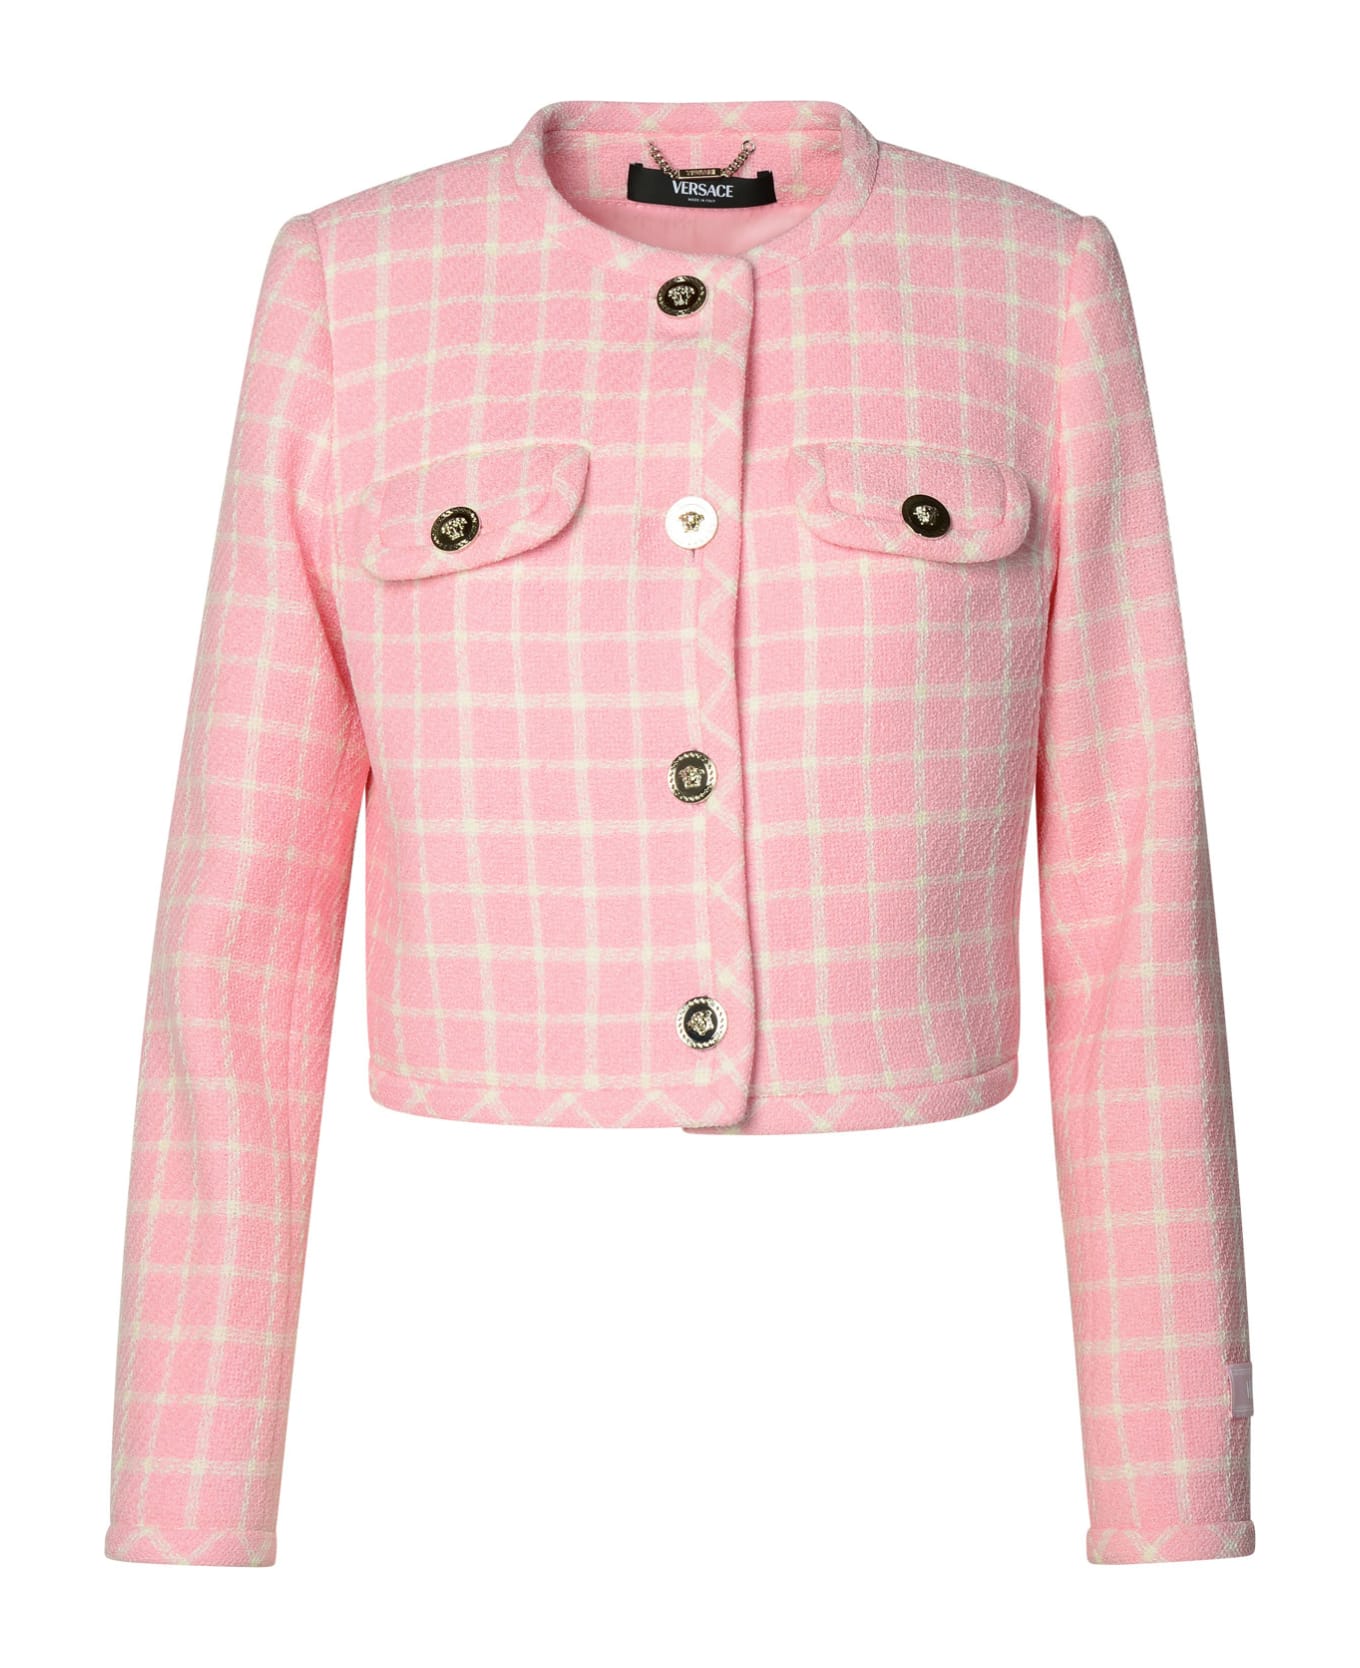 Versace Virgin Wool Blend Jacket - Pastel pink + white ジャケット